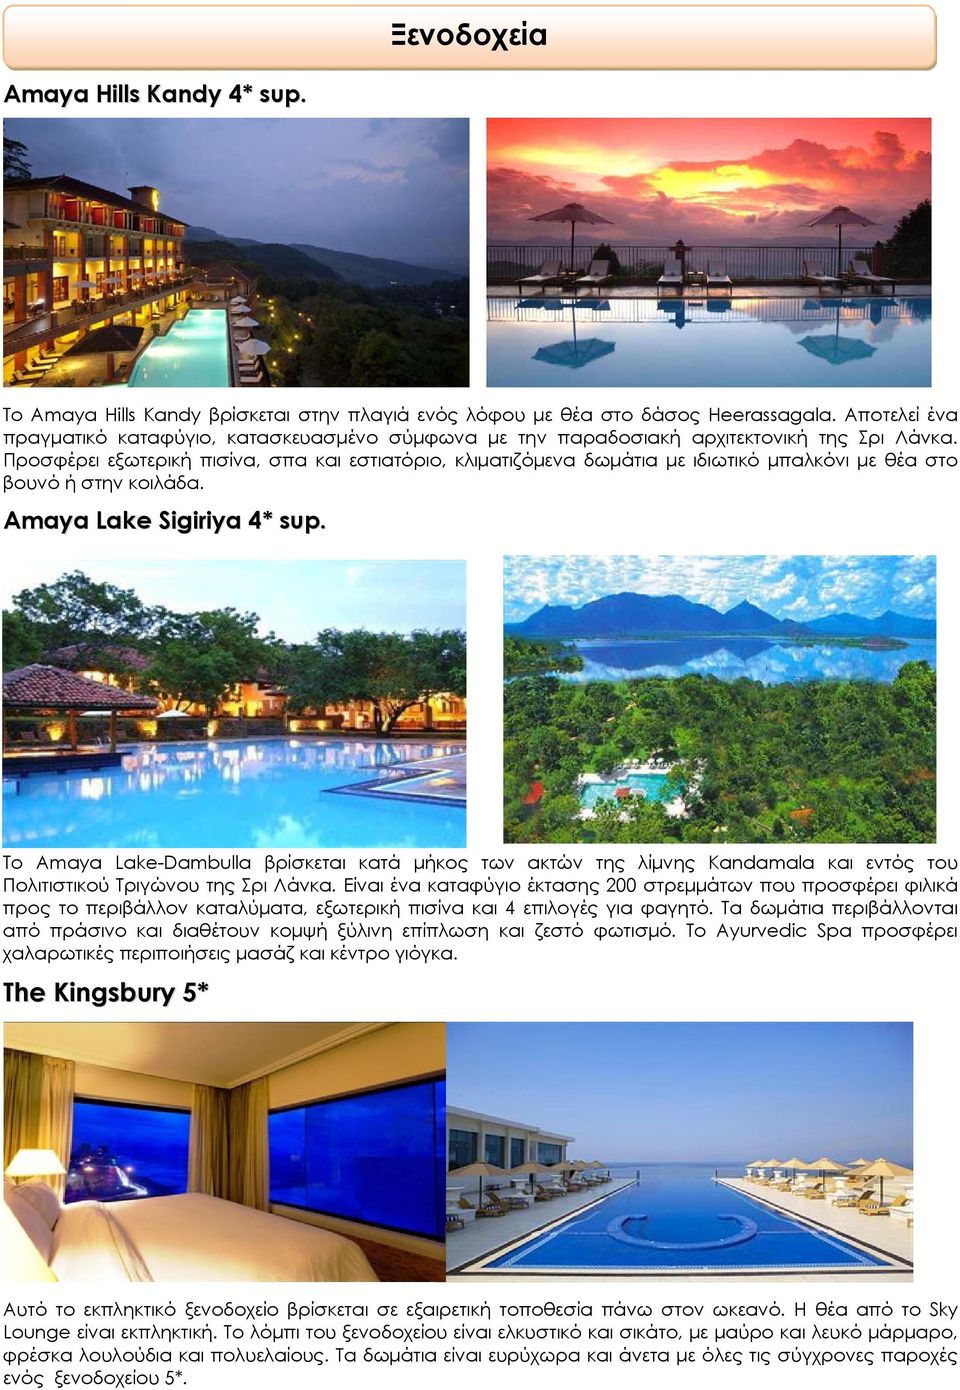 Προσφέρει εξωτερική πισίνα, σπα και εστιατόριο, κλιματιζόμενα δωμάτια με ιδιωτικό μπαλκόνι με θέα στο βουνό ή στην κοιλάδα. Amaya Lake Sigiriya 4* sup.